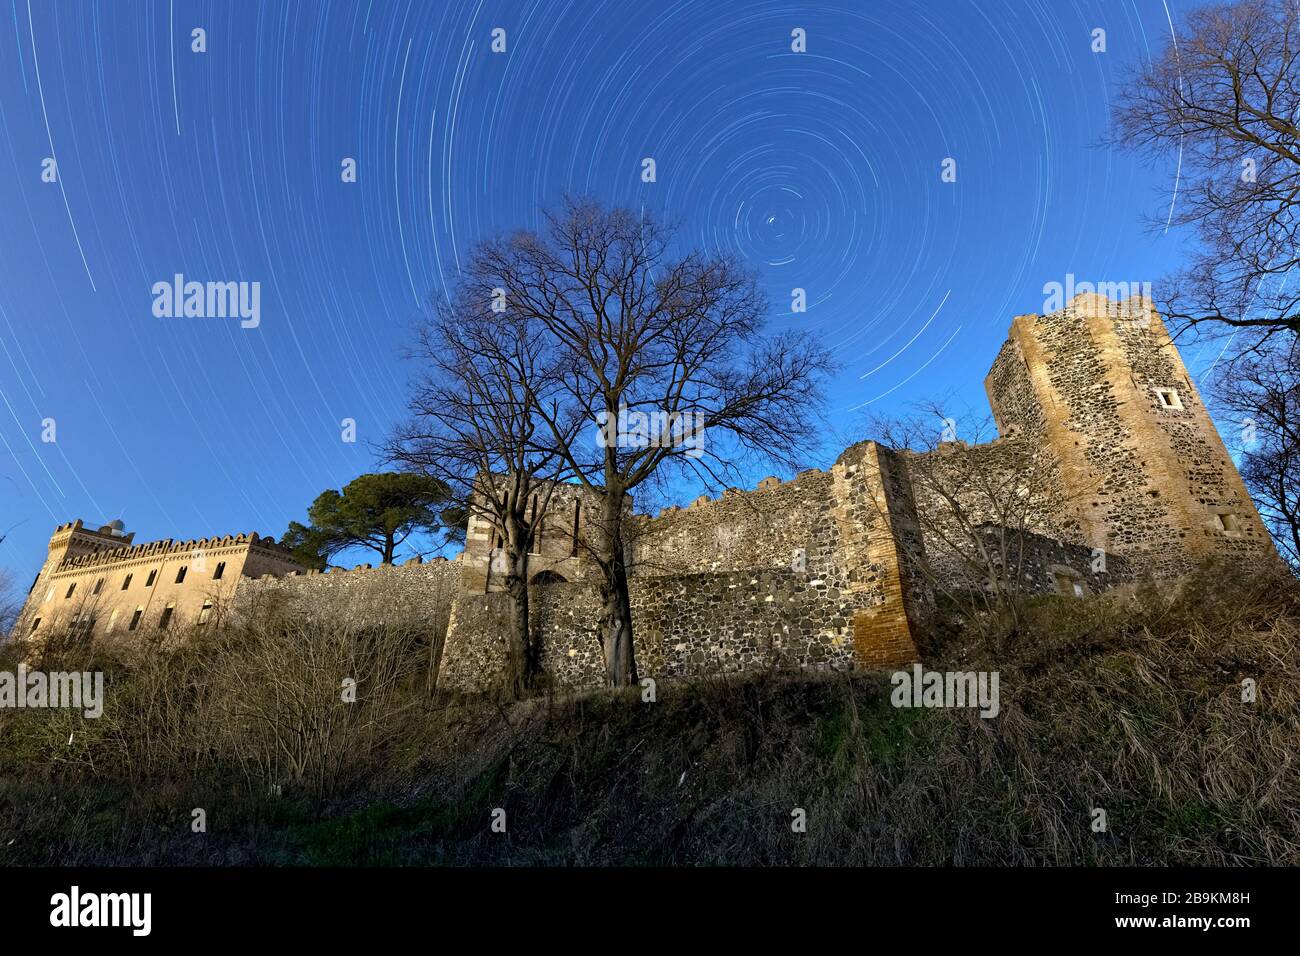 Star trails above the Maltraverso castle in Montebello Vicentino. Vicenza province, Veneto, Italy, Europe. Stock Photo